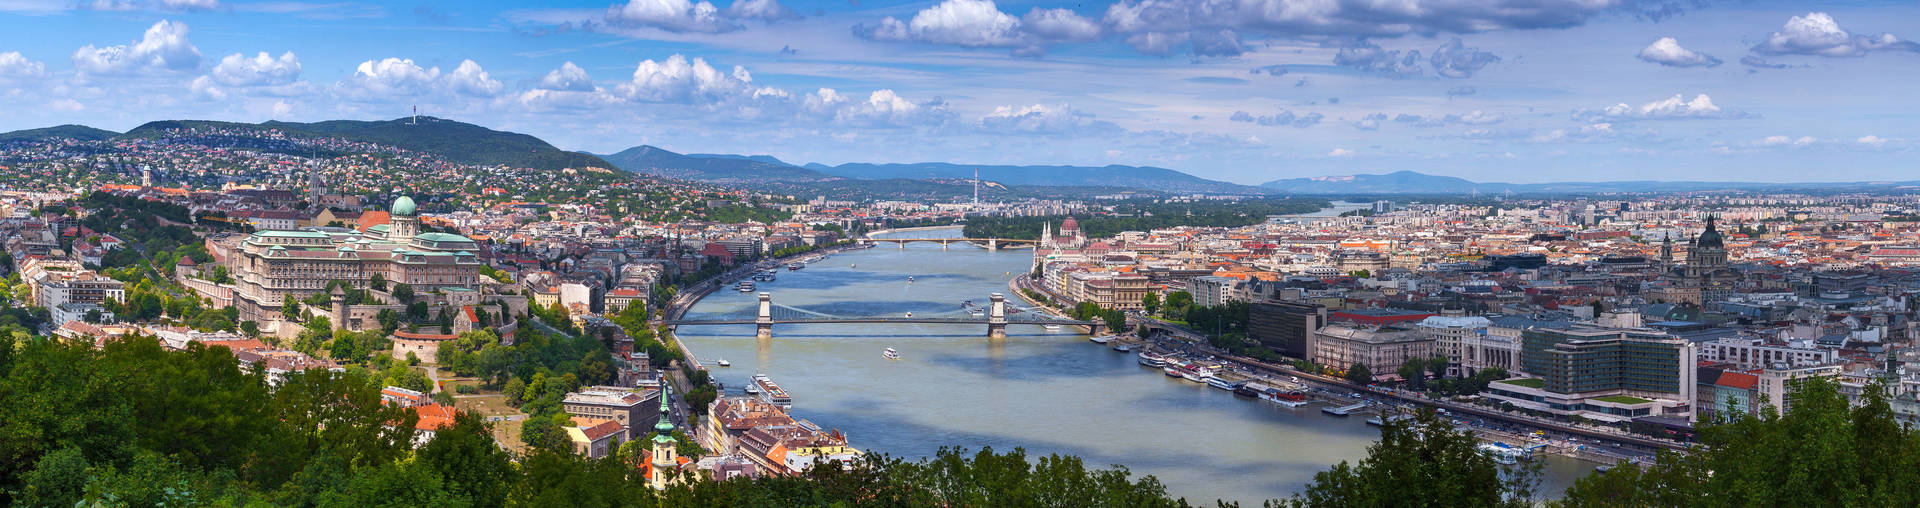 Induljon és fedezze fel - H2 Hotel Budapest